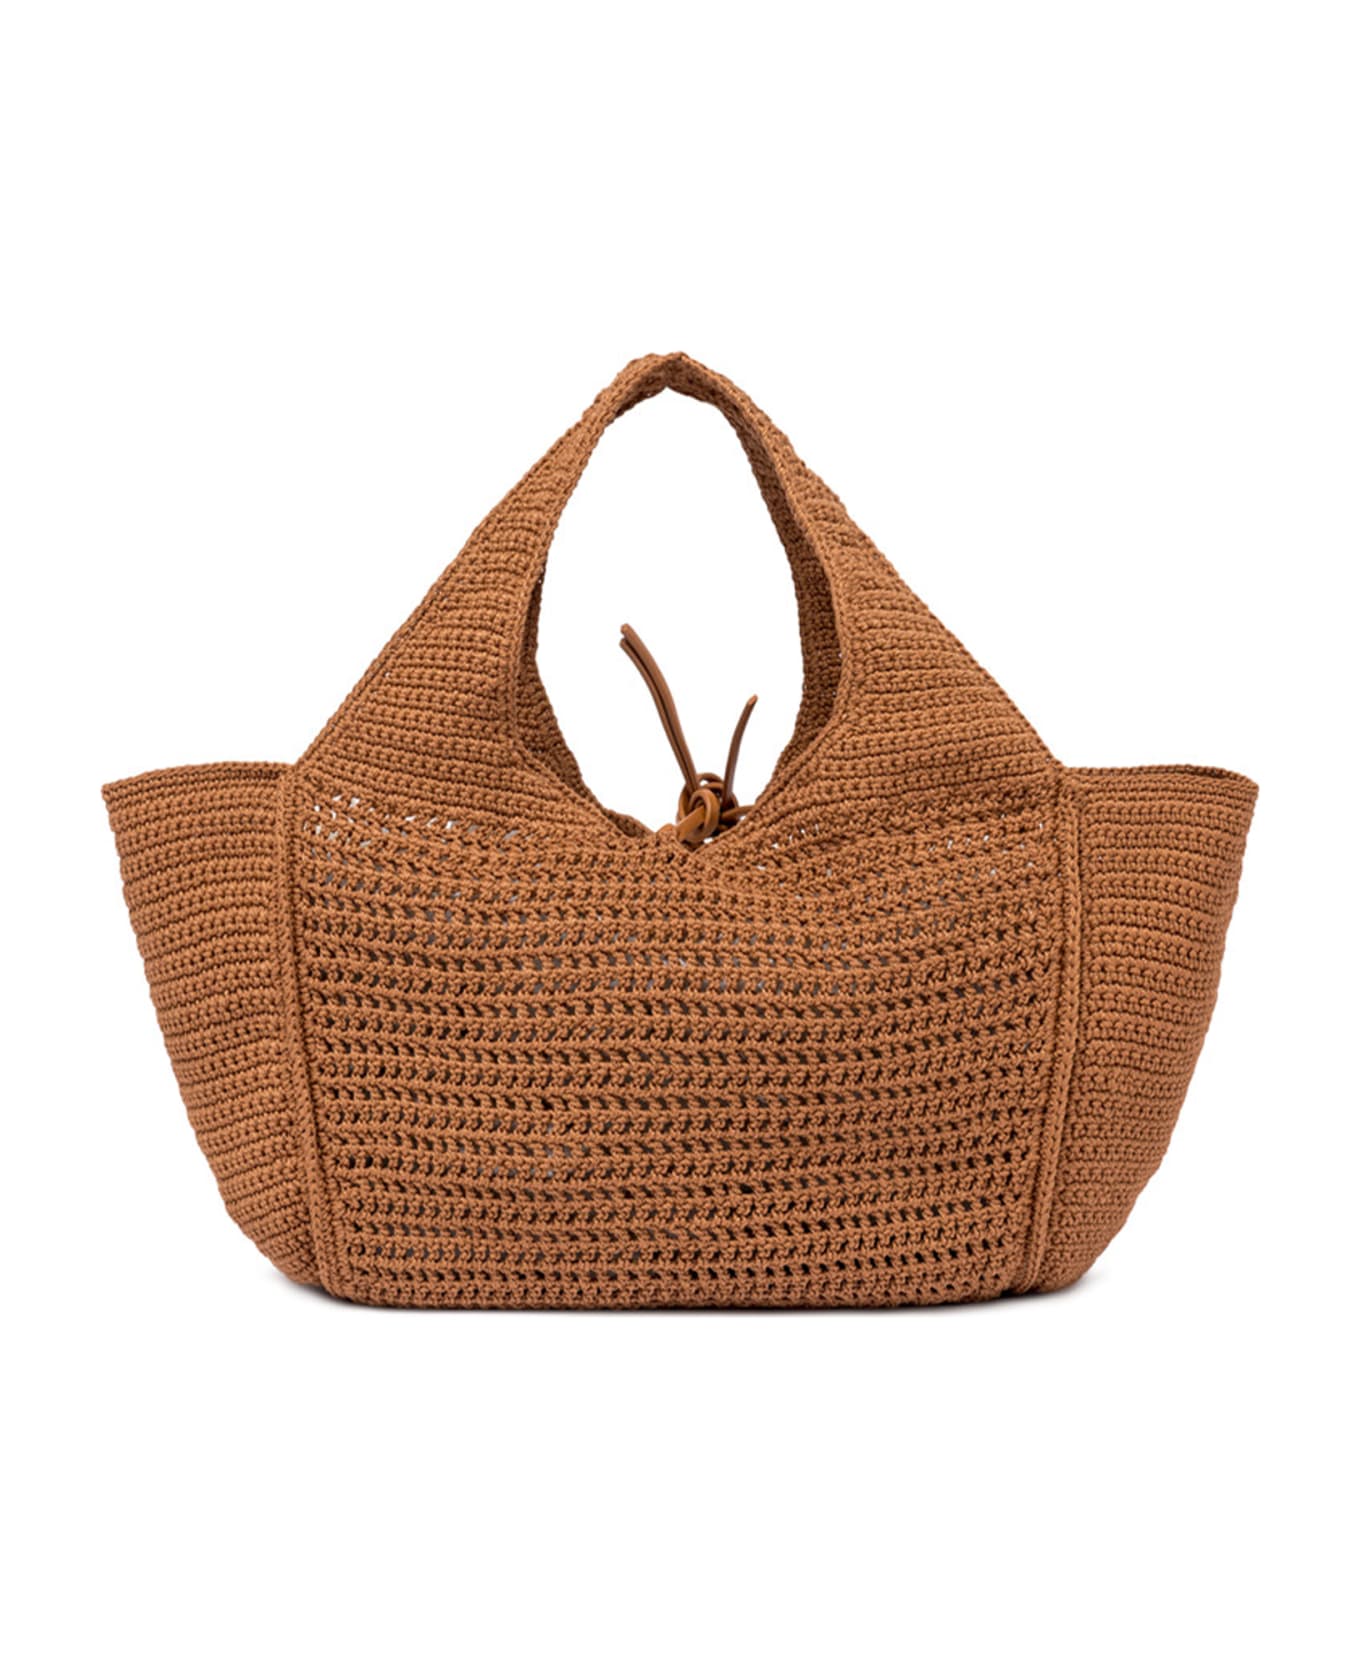 Gianni Chiarini Euforia Leather Shopping Bag In Crochet Fabric - COPPER